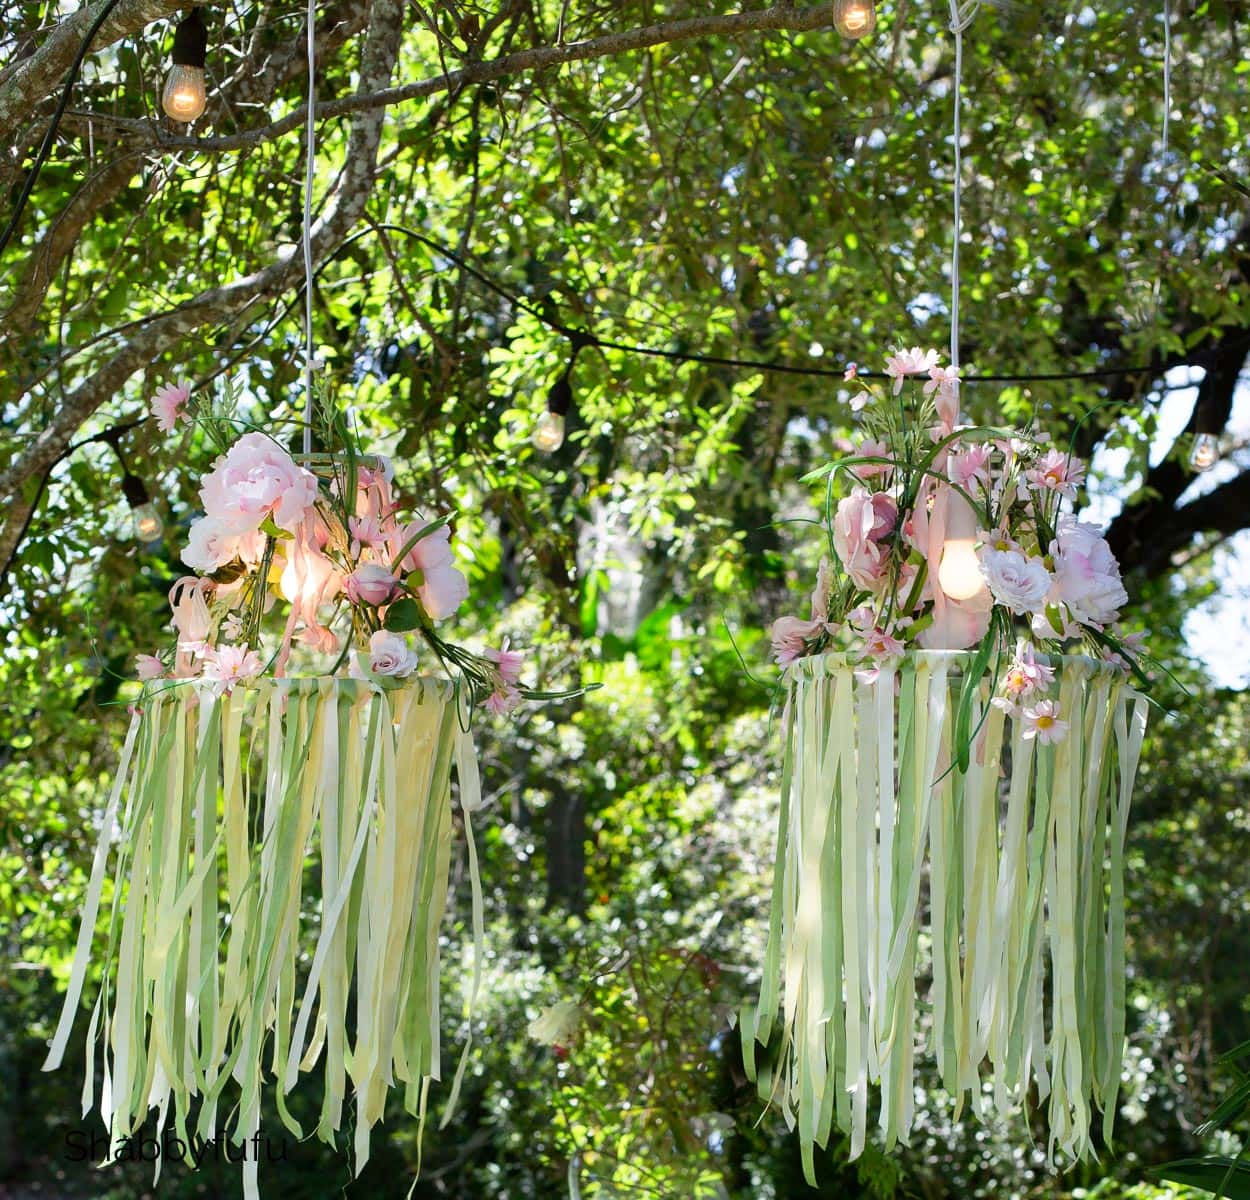 floral chandelier diy